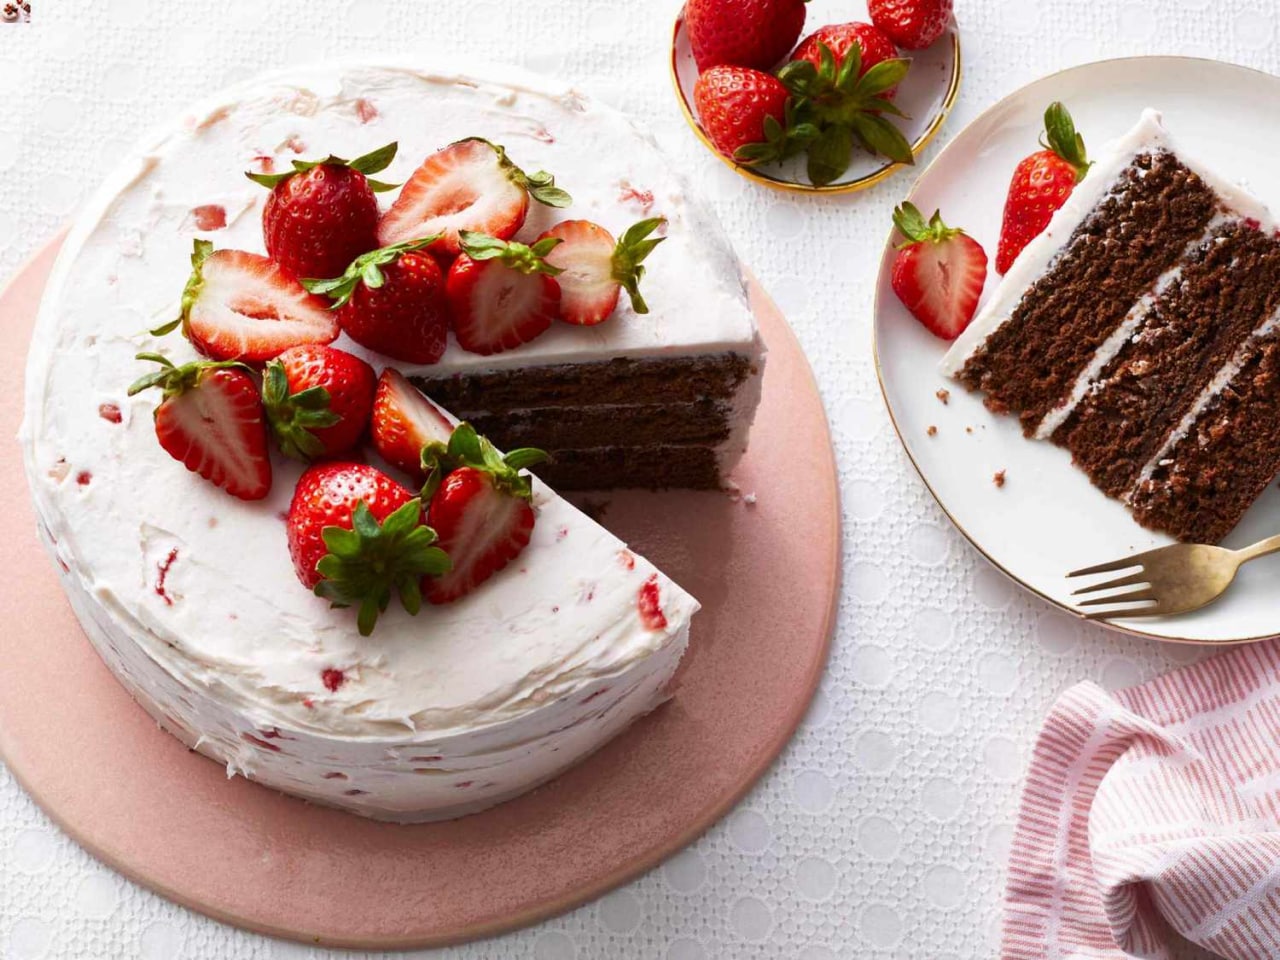 پنج راز درباره علت خراب شدن کیک بعد از پخت